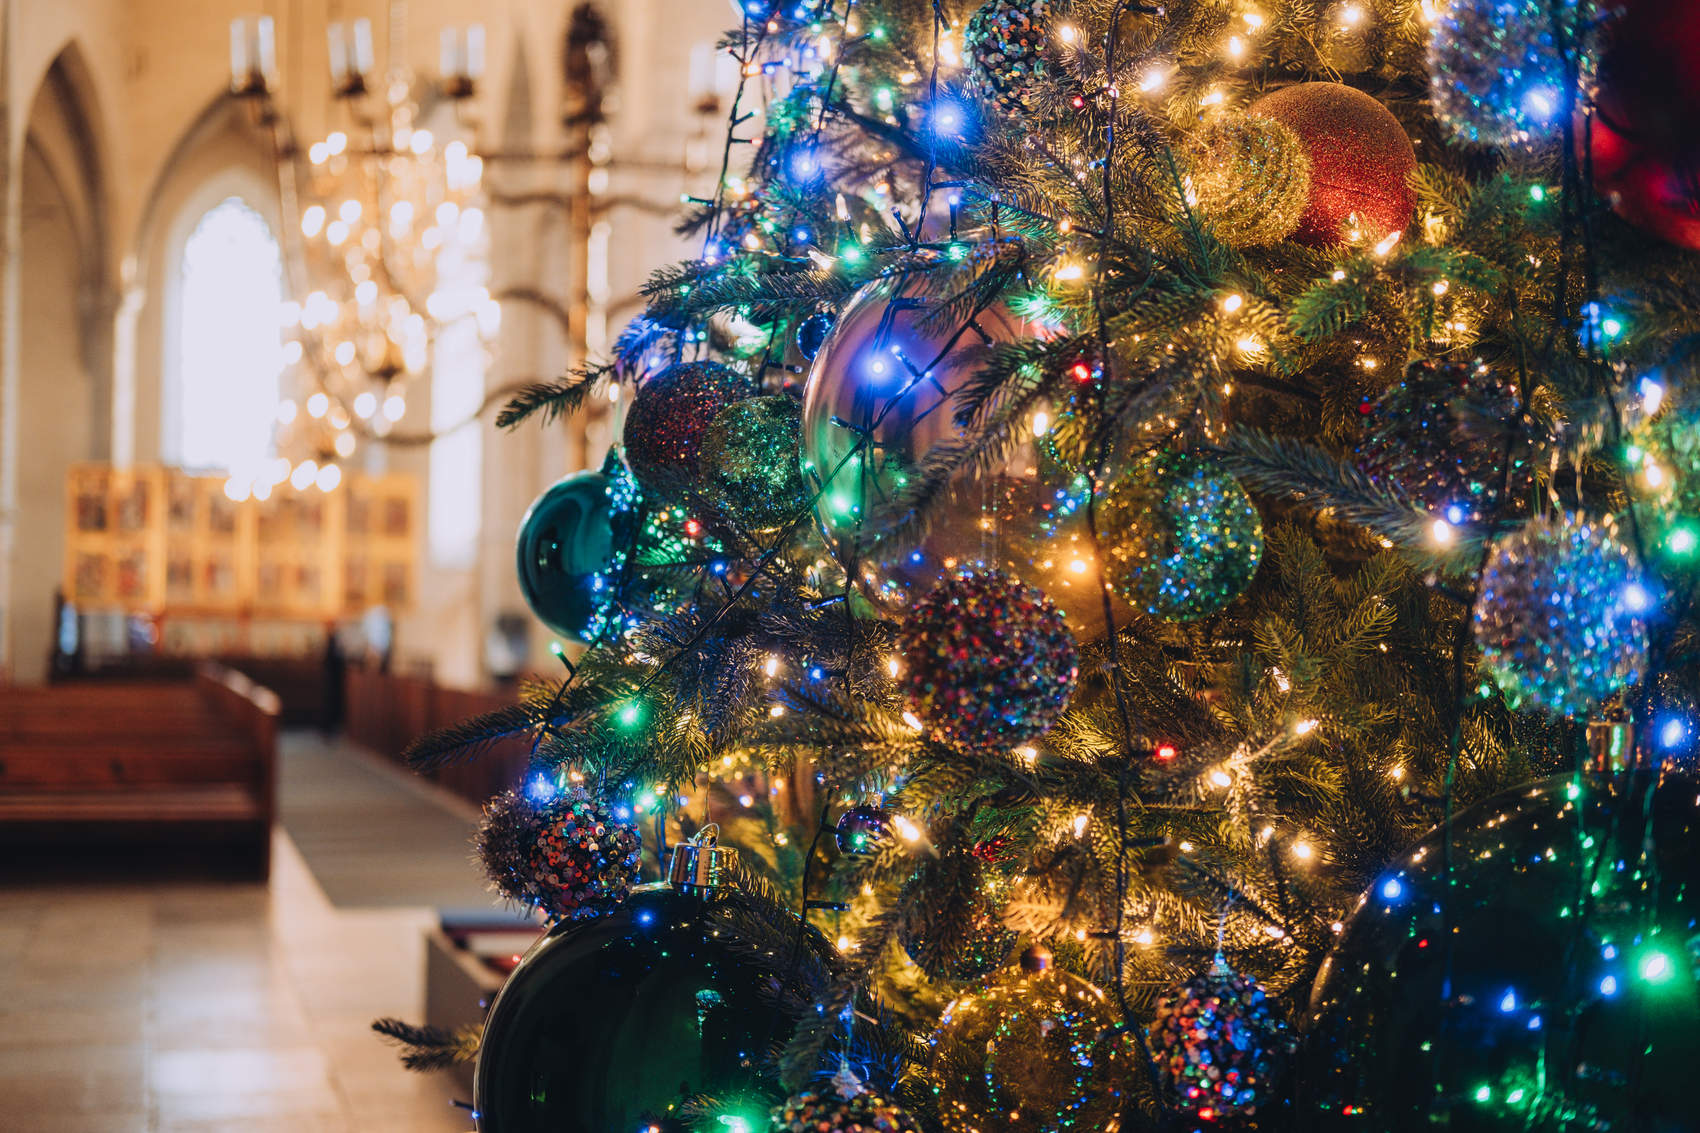 Niguliste jõulupuu, taustal altar ja kiriku aknad. Foto: Kadi-Liis Koppel